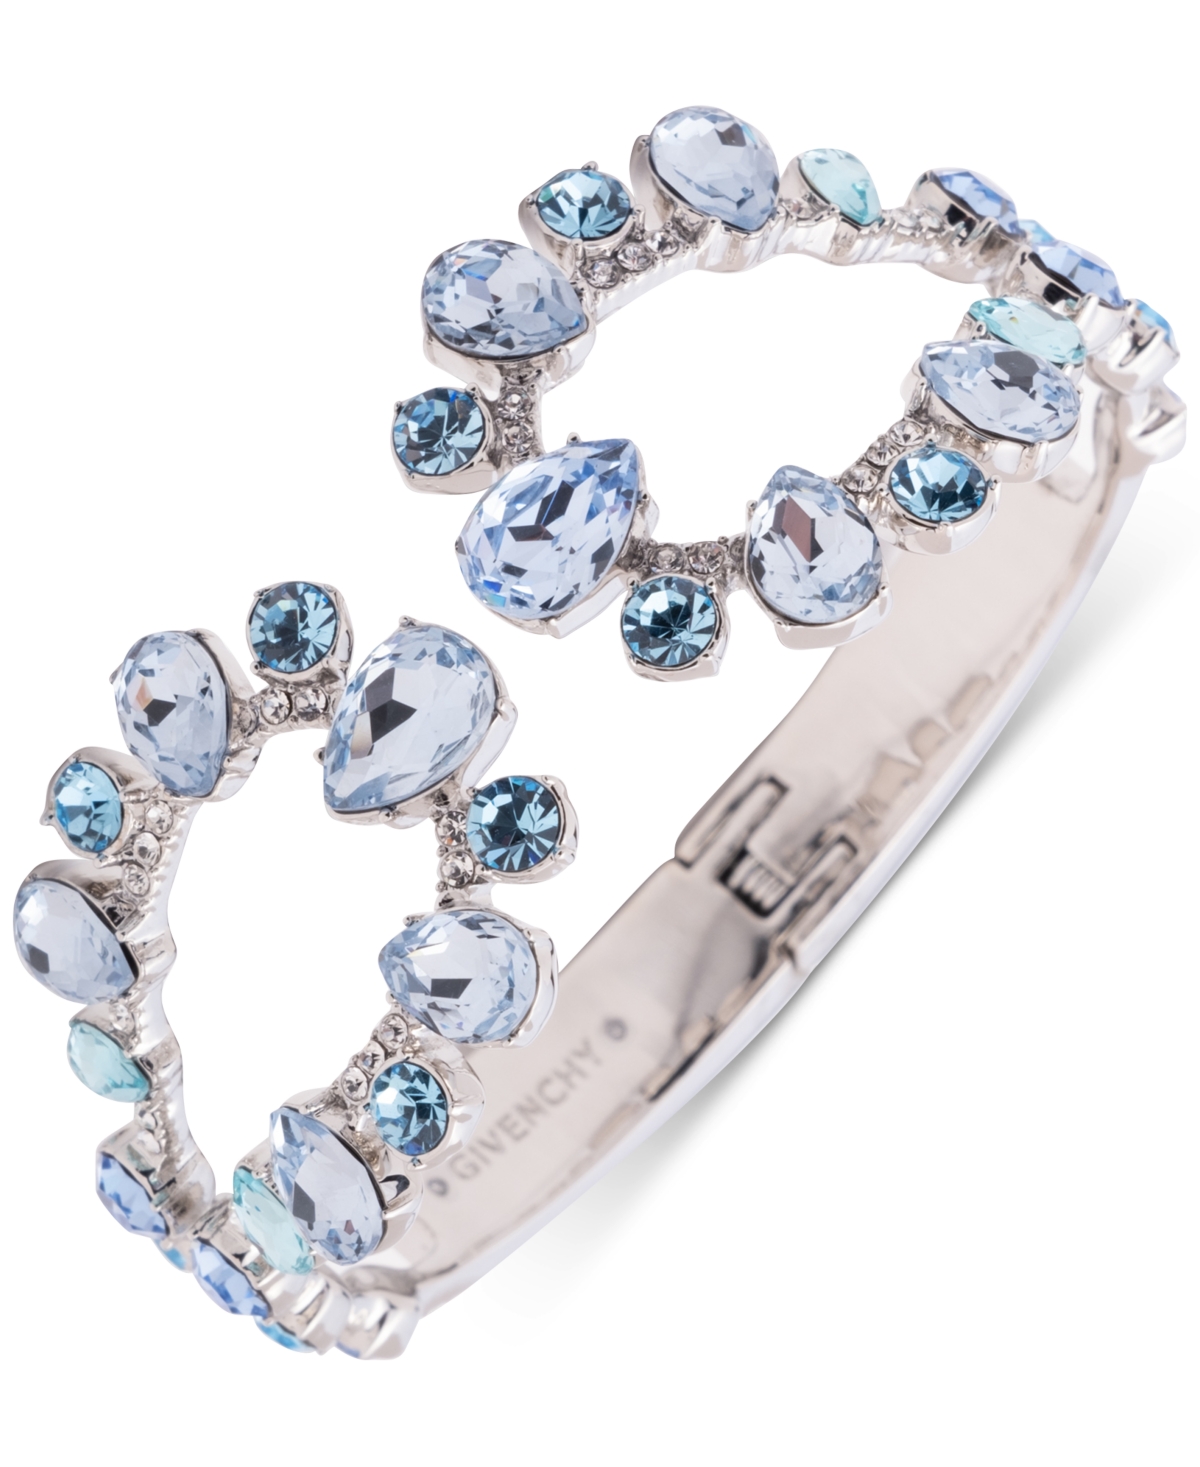 Silver-Tone Open Crystal Cuff Bracelet - Navy